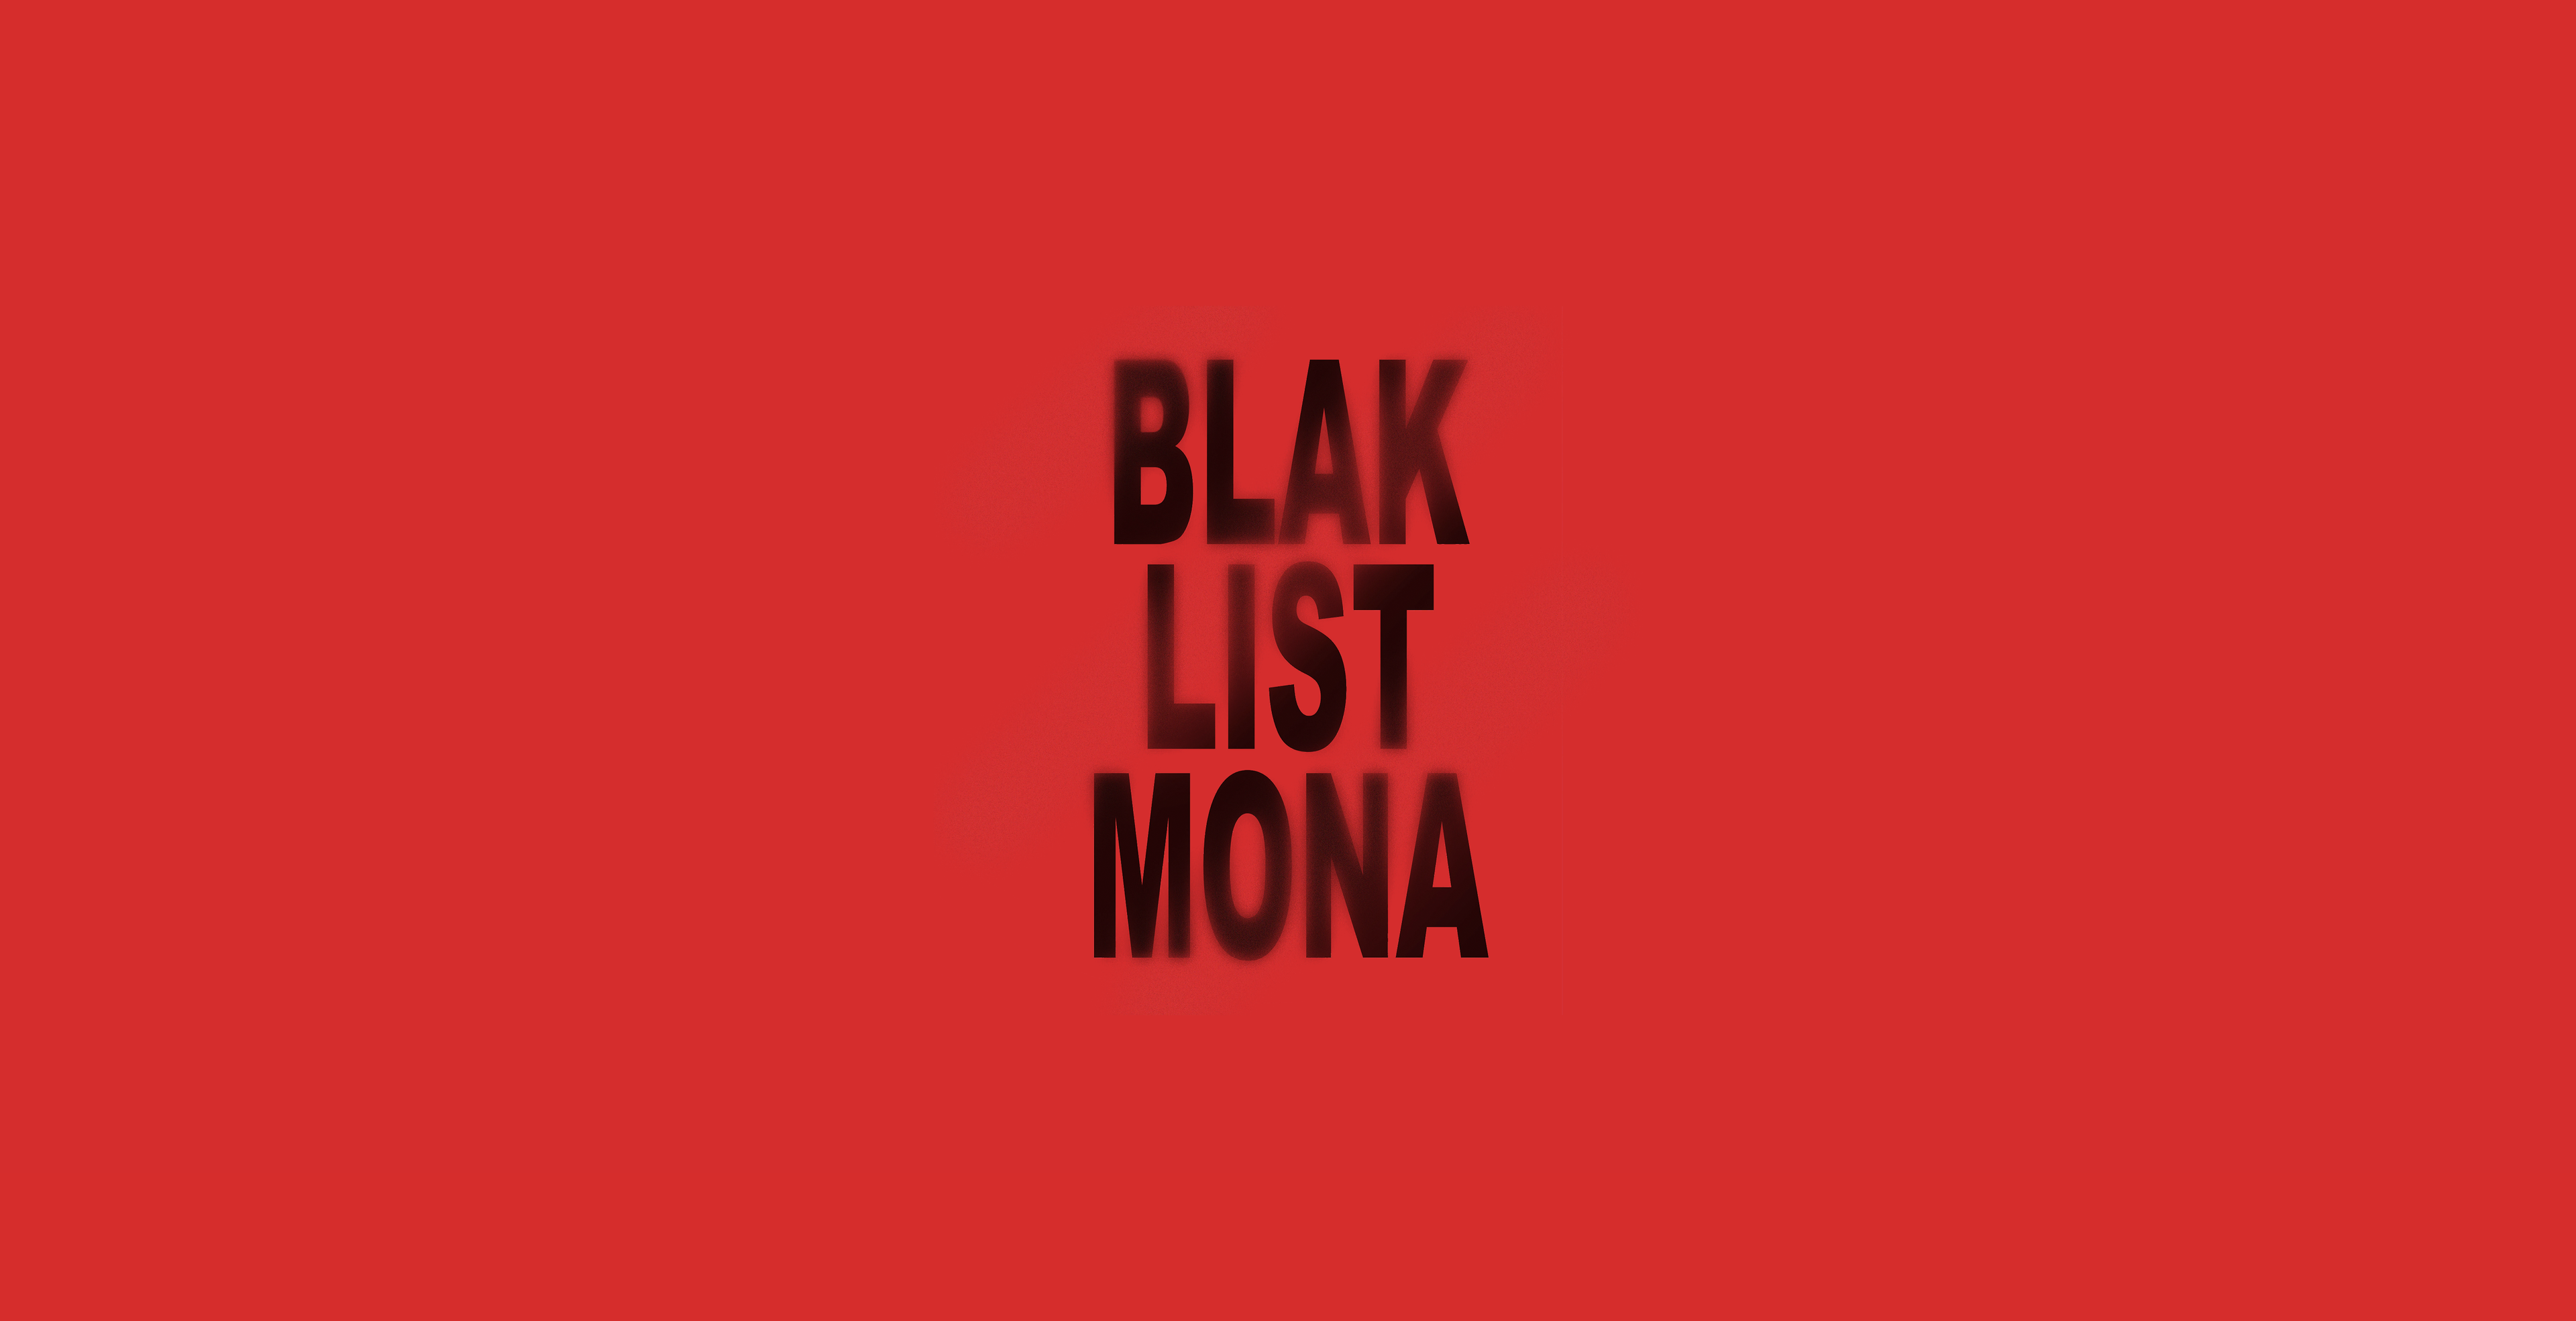 BLAK LIST MONA, Courtesy of Blak List MONA.